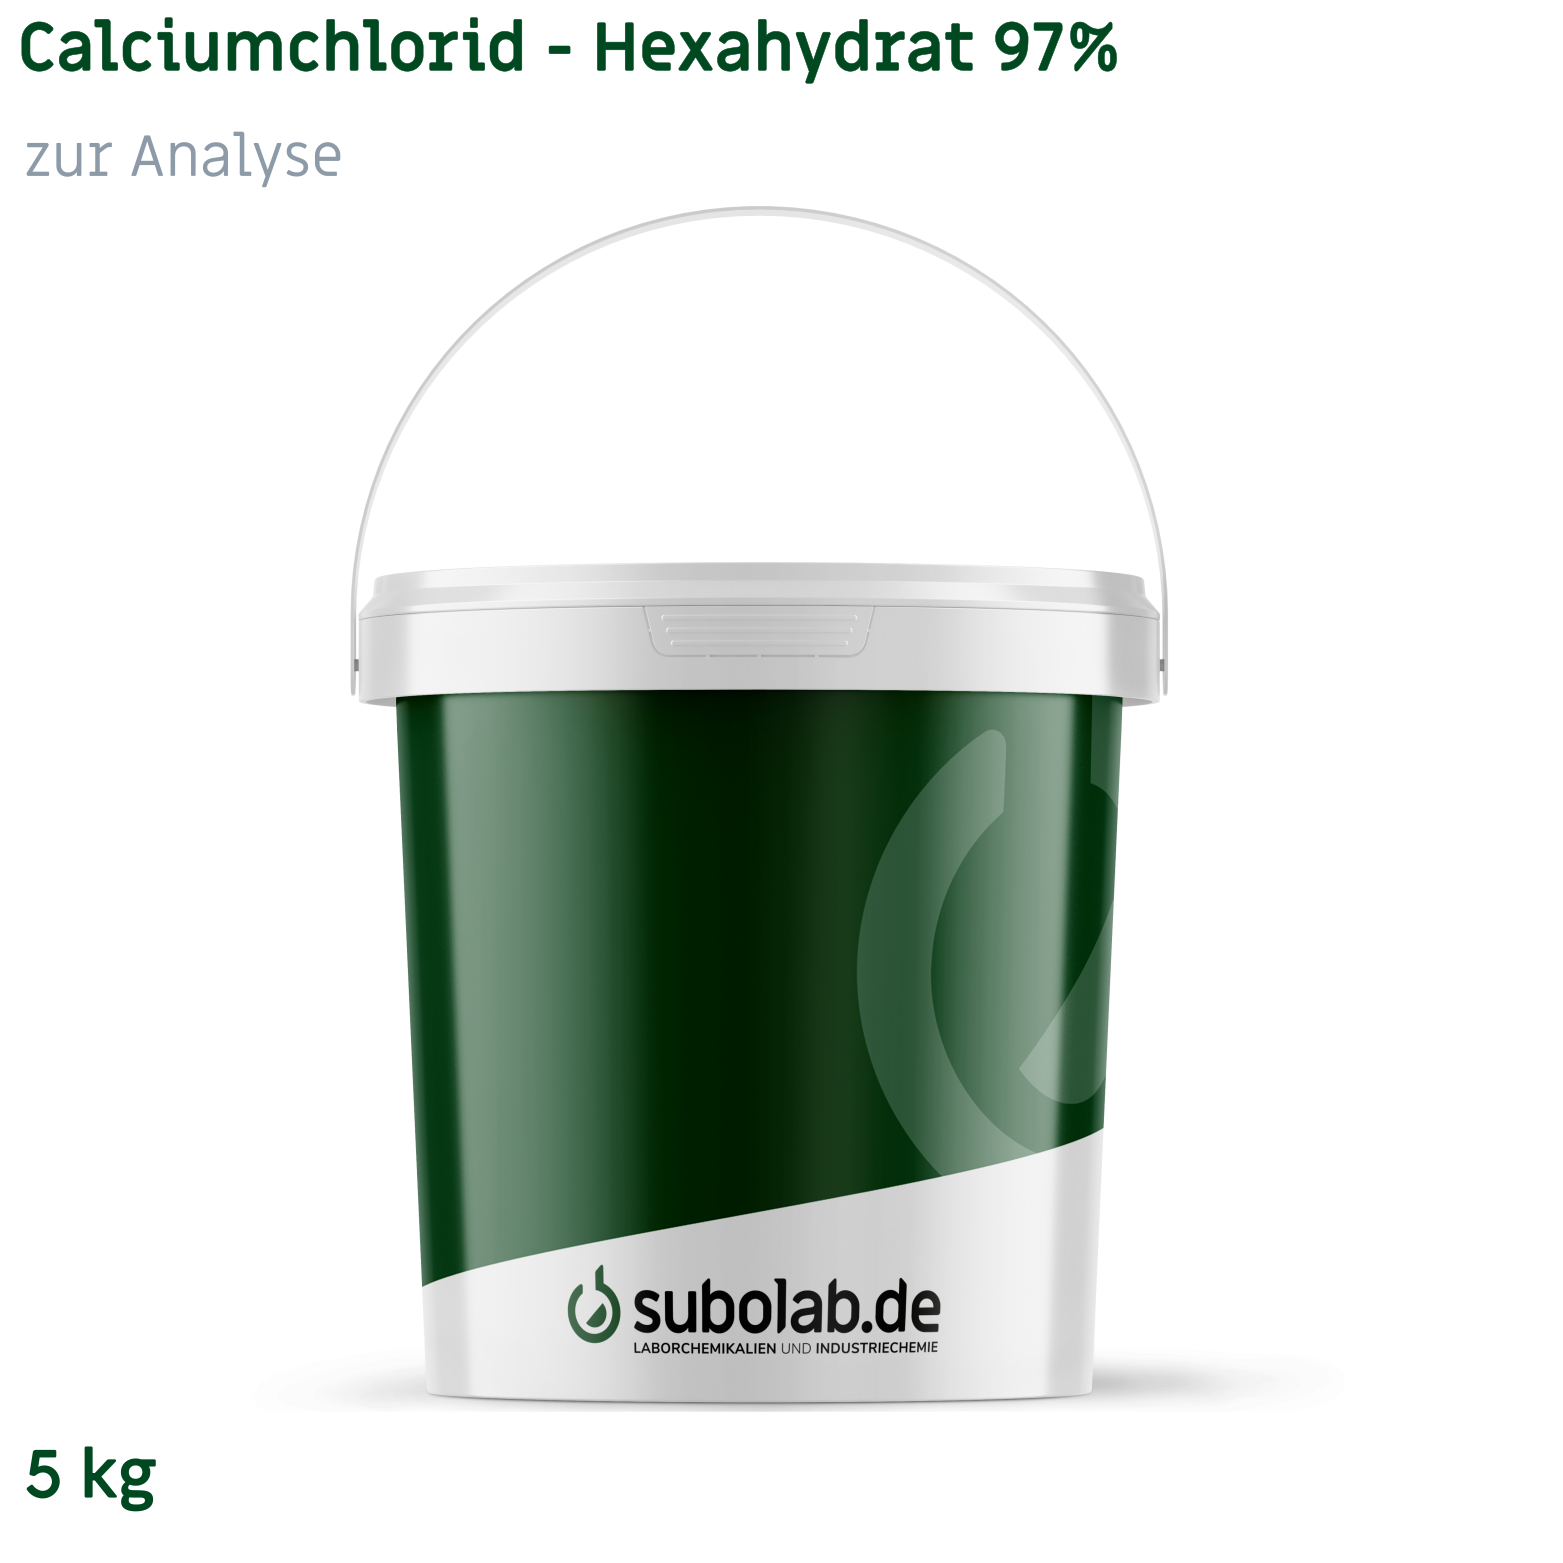 Bild von Calciumchlorid - Hexahydrat 97% zur Analyse (5 kg)